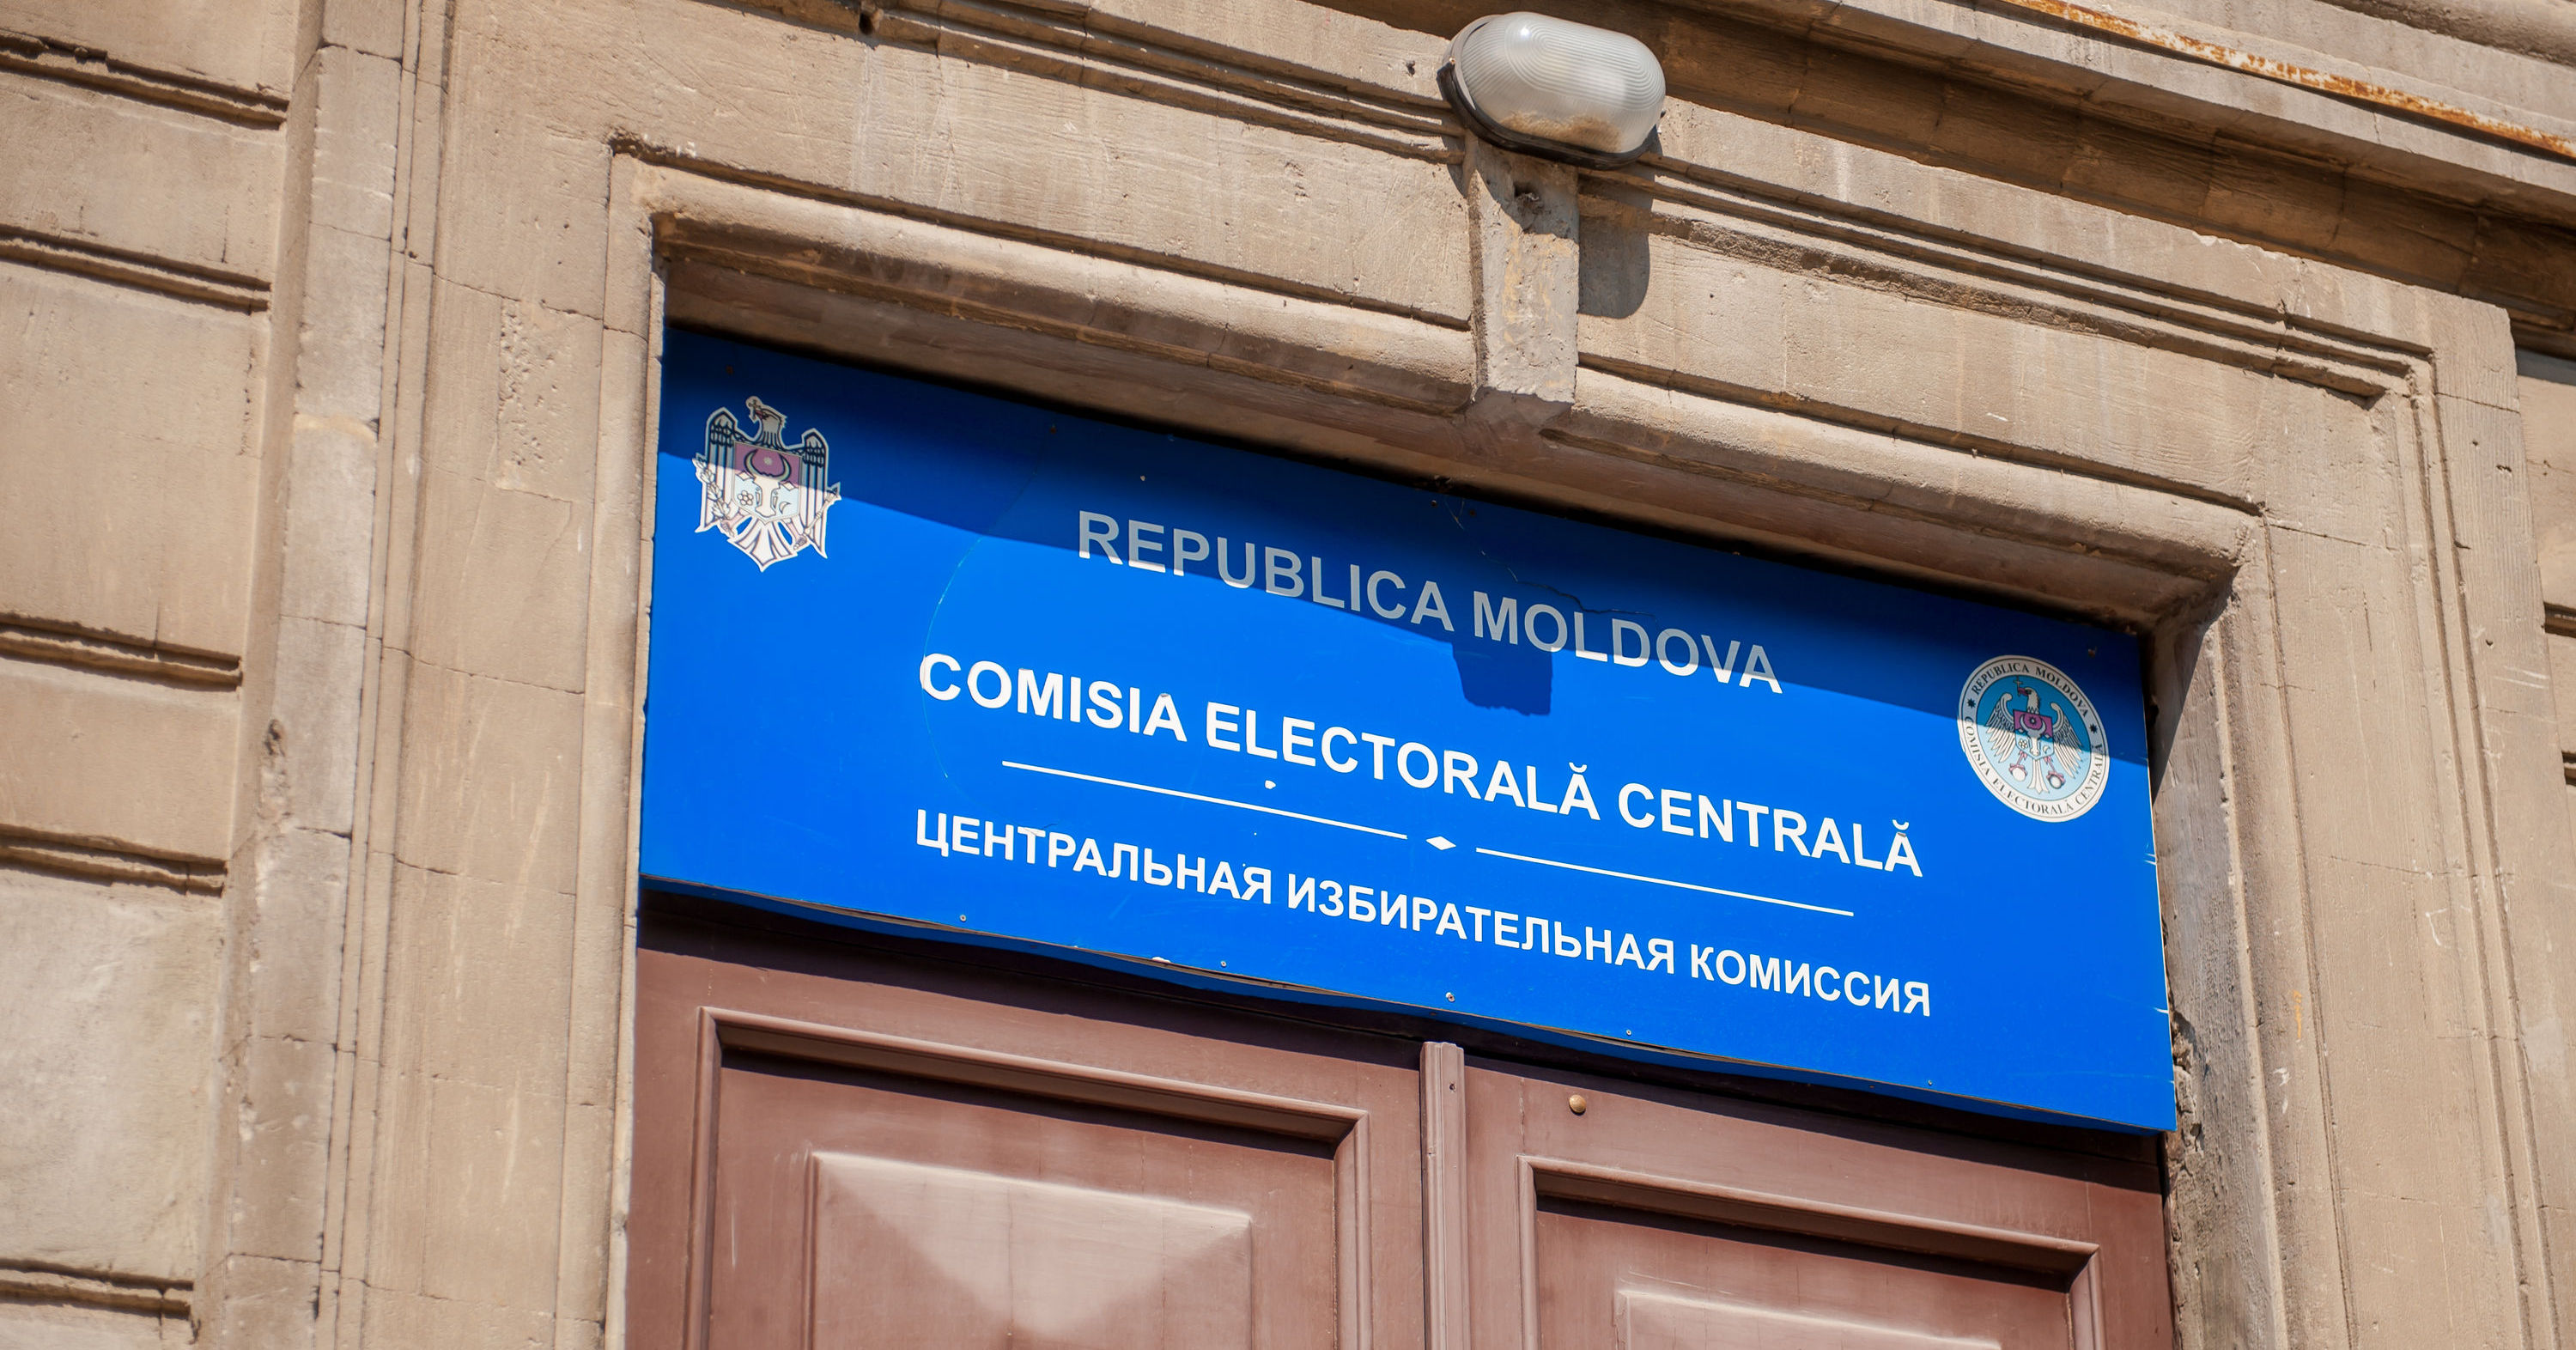 ЦИК аккредитовала еще 20 международных наблюдателей на местных выборах. Фото Point.md.